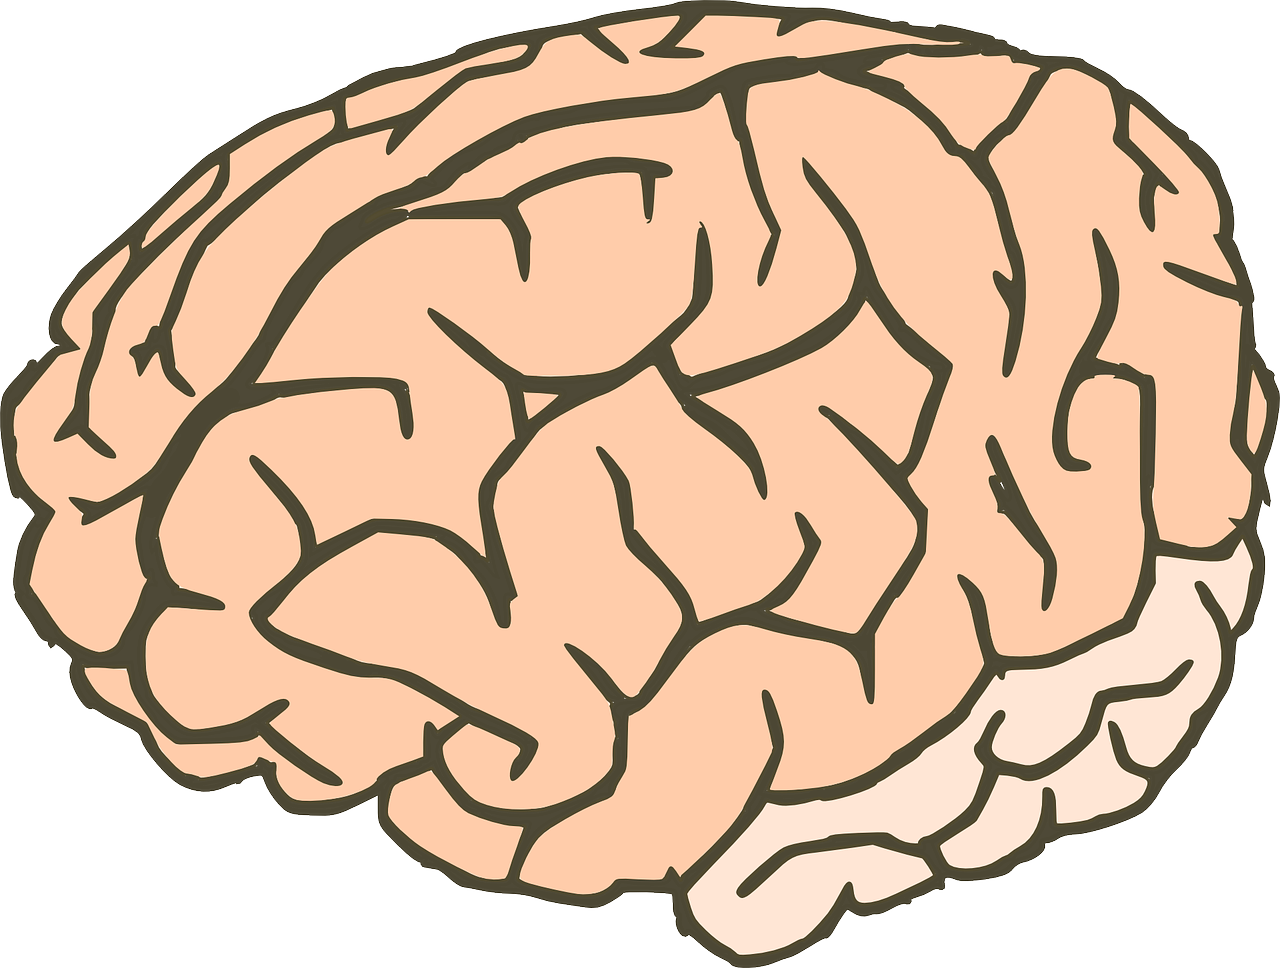 Smegenys, Žinios, Anatomija, Biologija, Organas, Žmogus, Mąstymas, Neuronai, Žmogaus Smegenys, Sinapsės